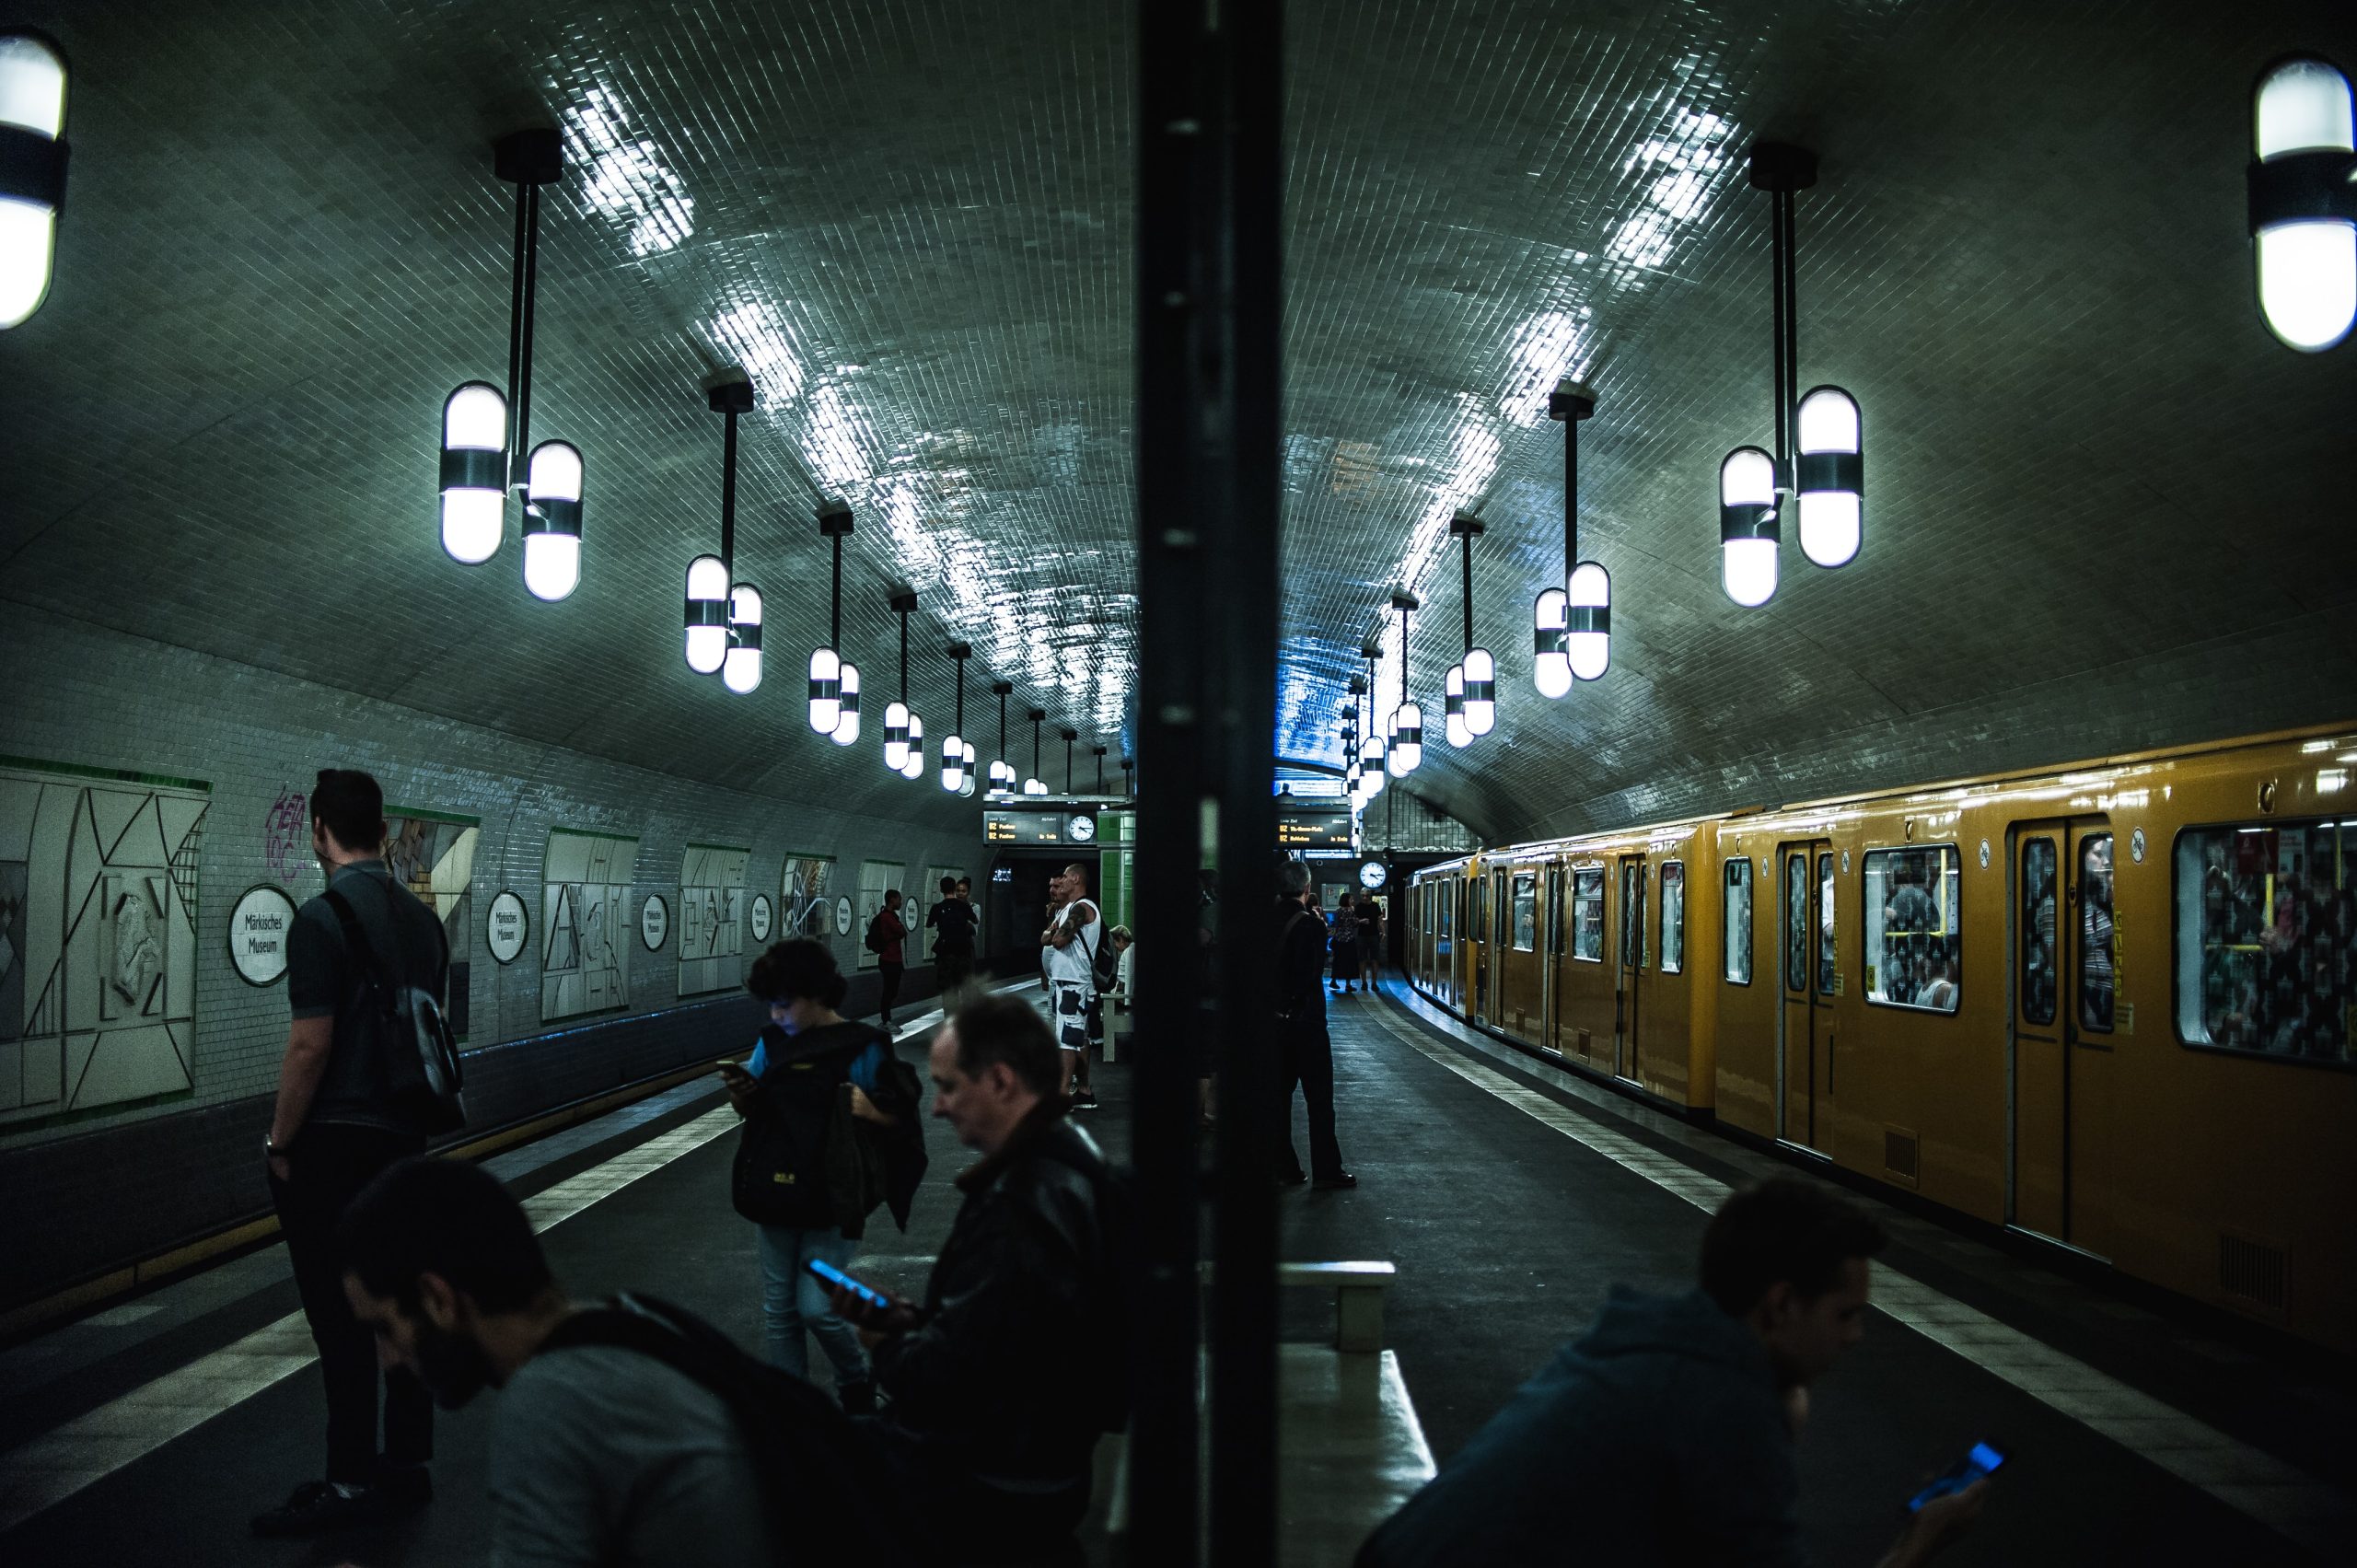 Treinreizen naar Berlijn vergelijken via internet